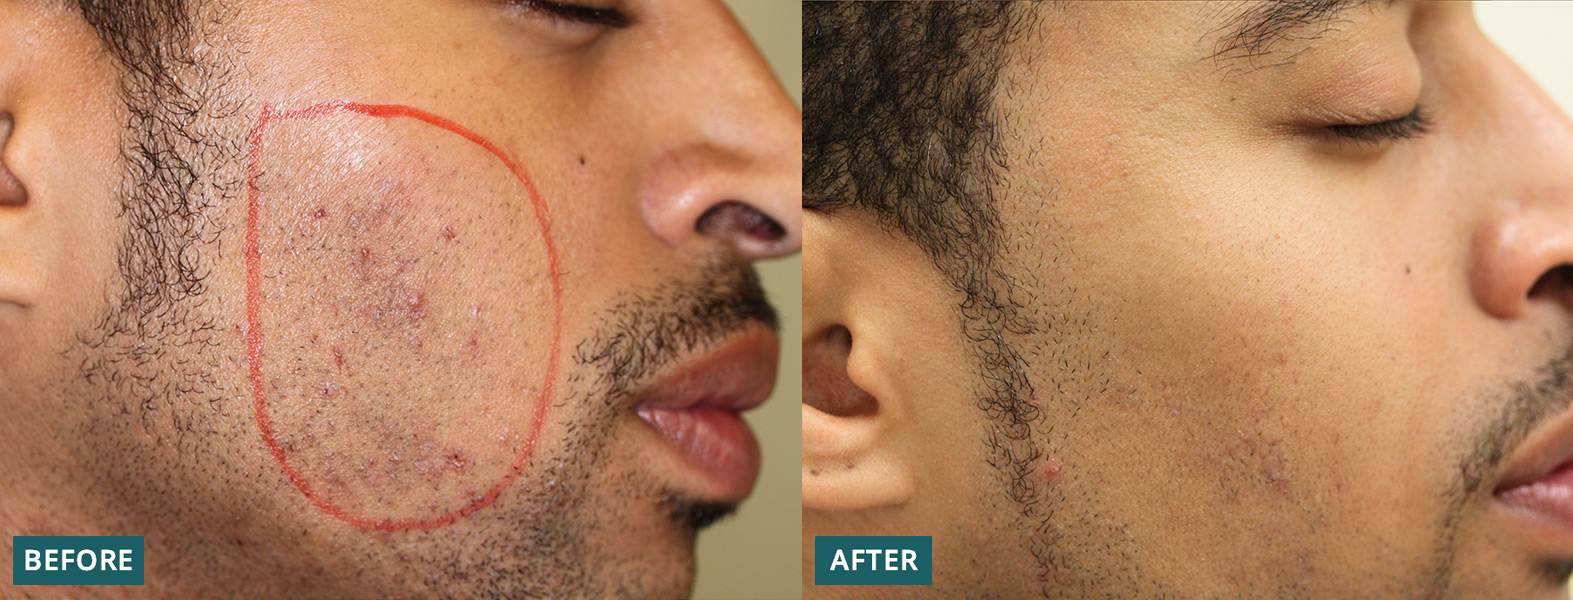 Ingrown Hairs | Dermatology & Laser Surgery Center